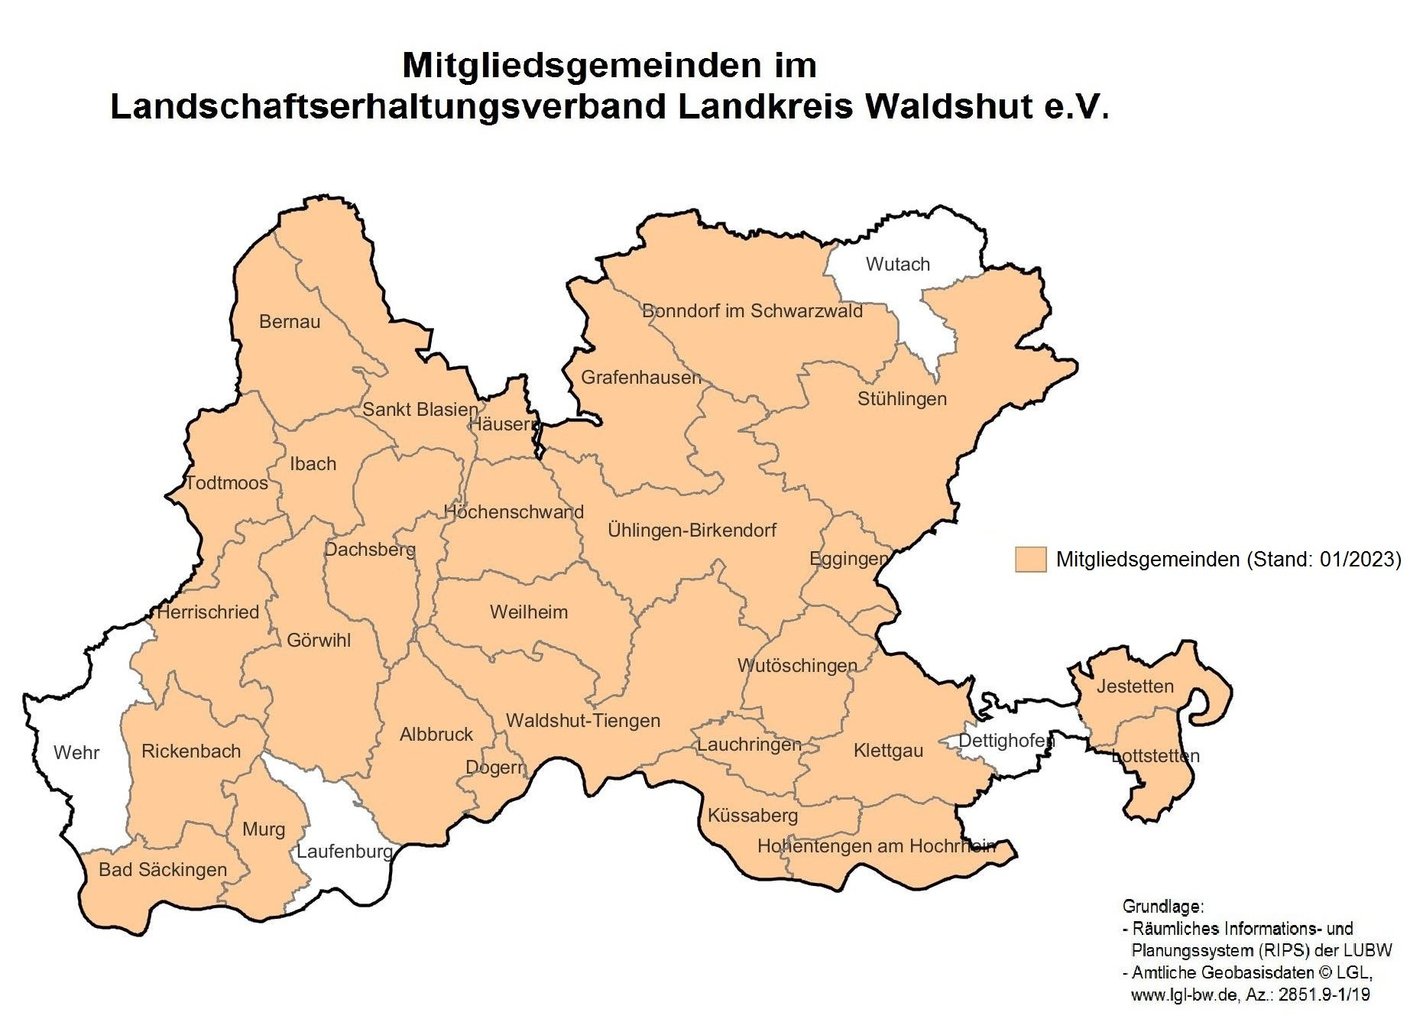 Mitgliedsgemeinden im LEV Waldshut (Stand:01/2023)